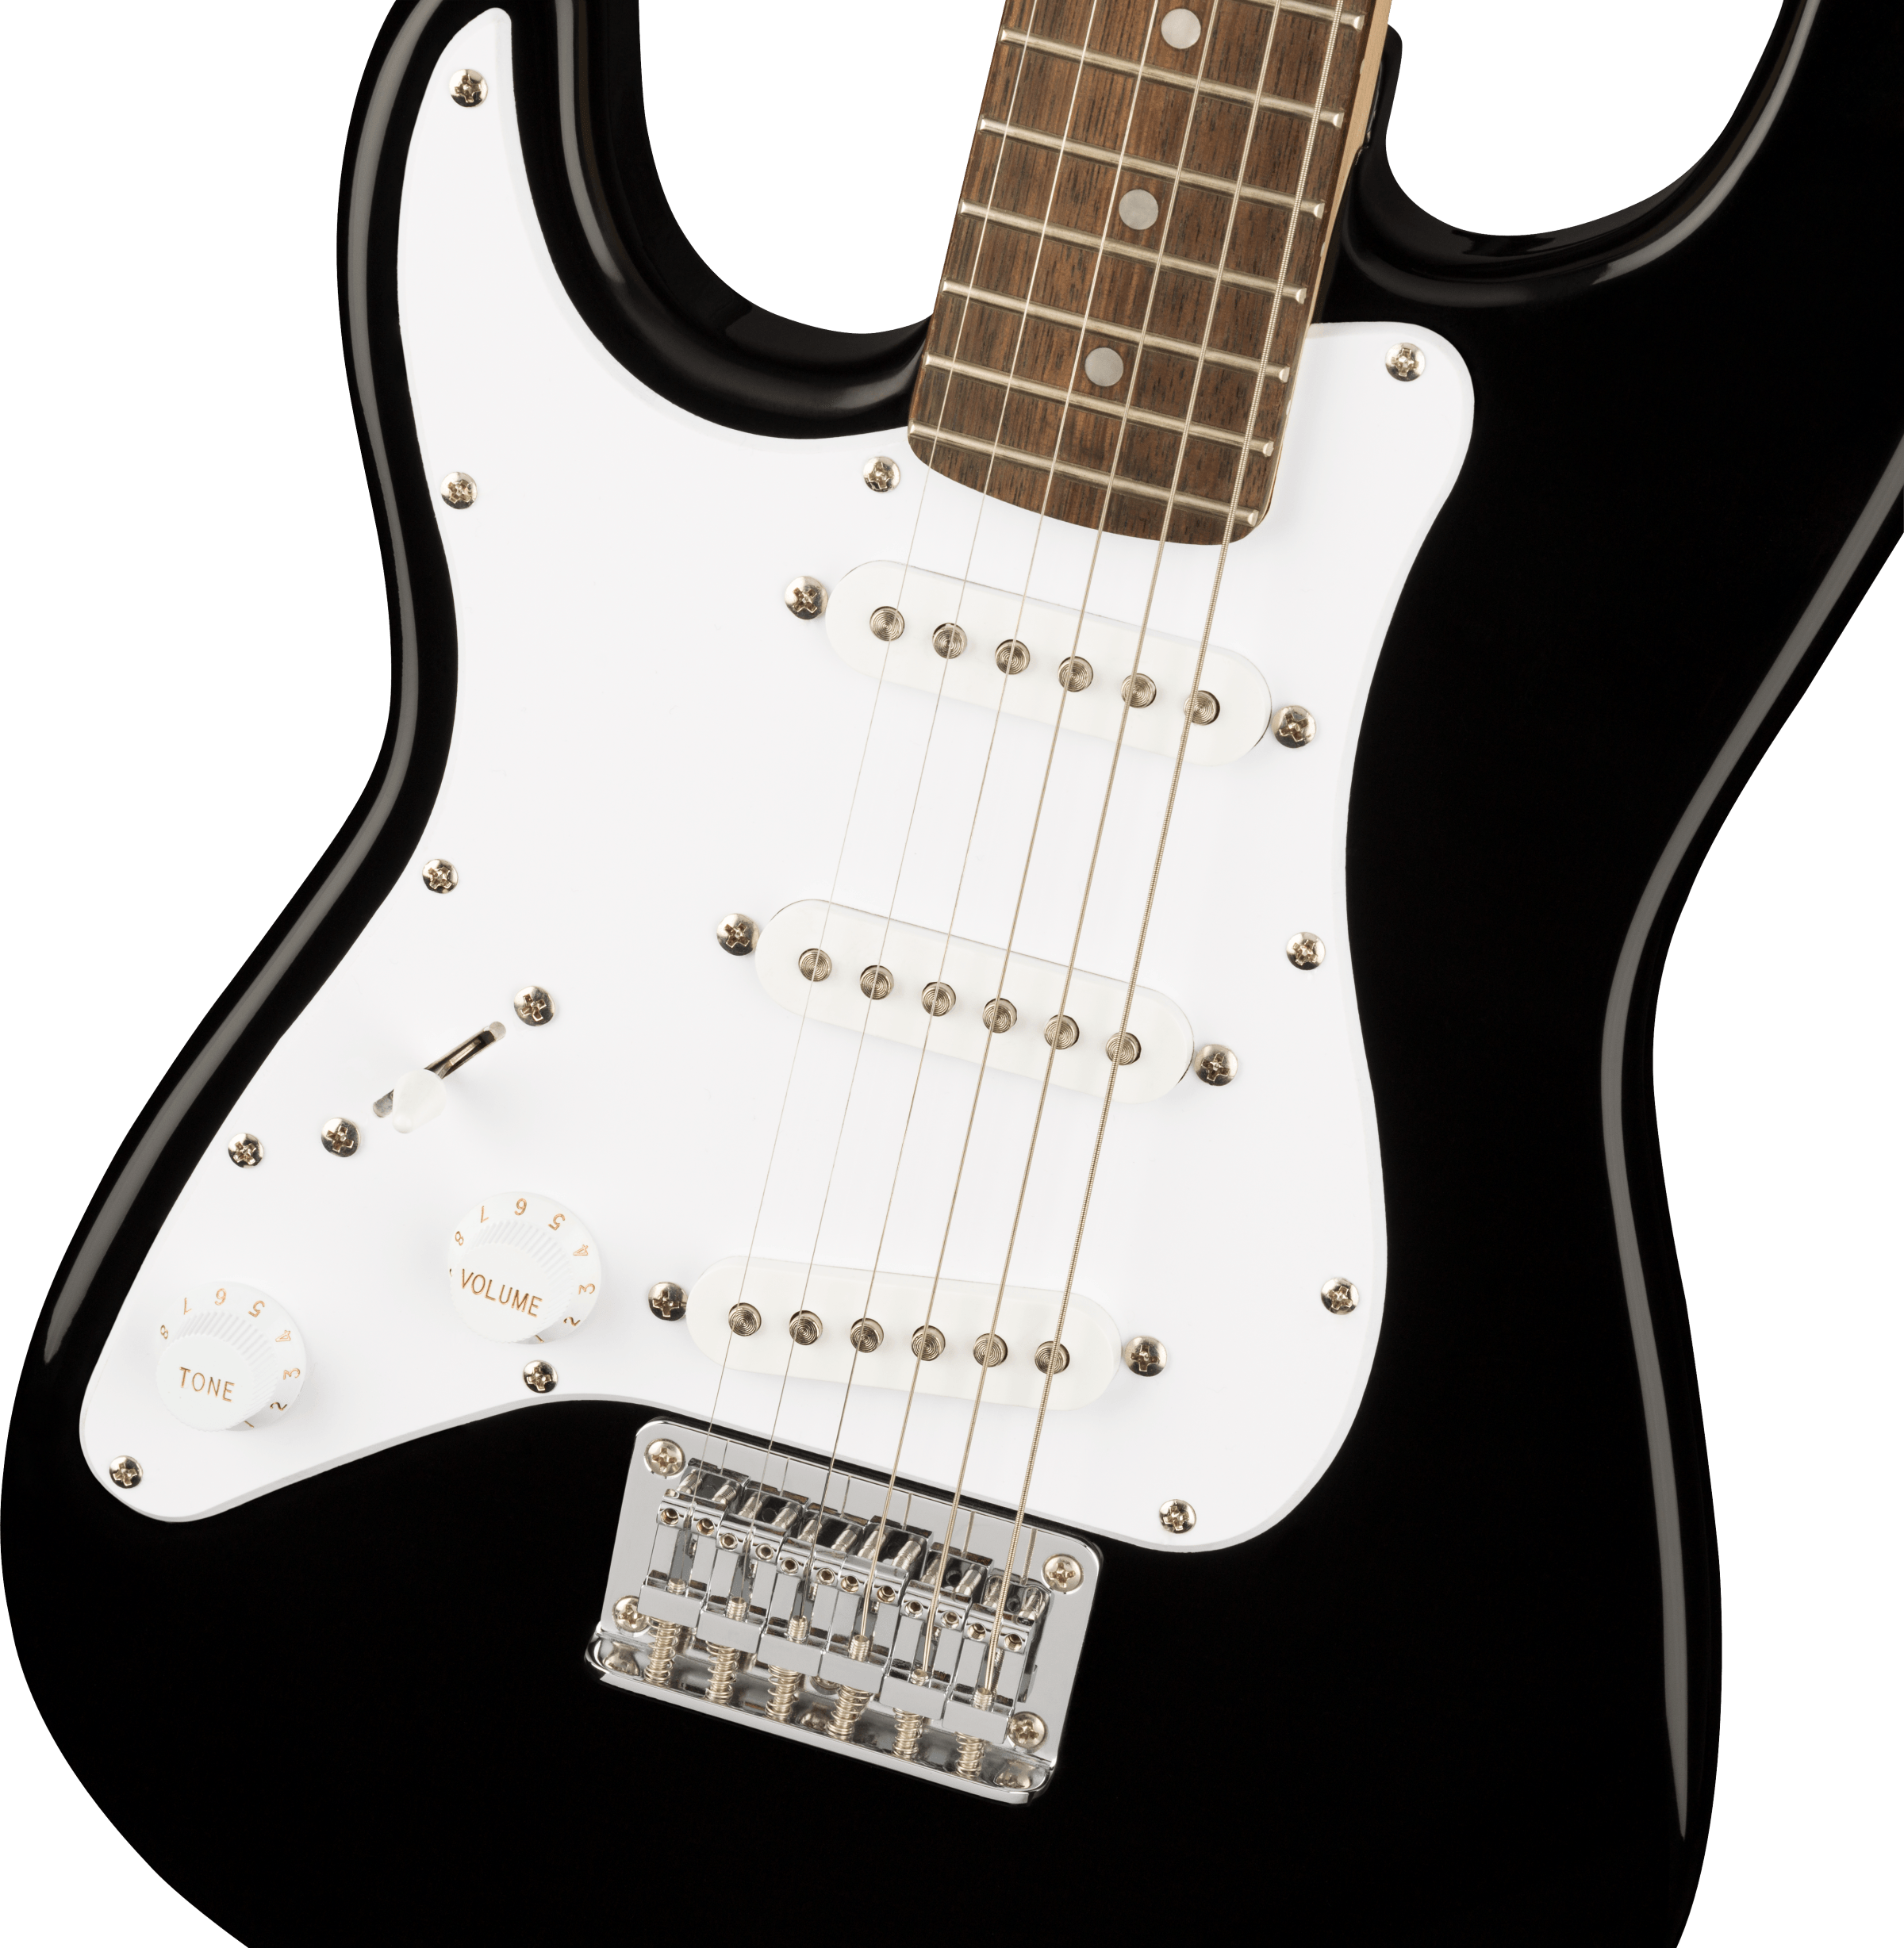 Mini Stratocaster Left-Handed Black